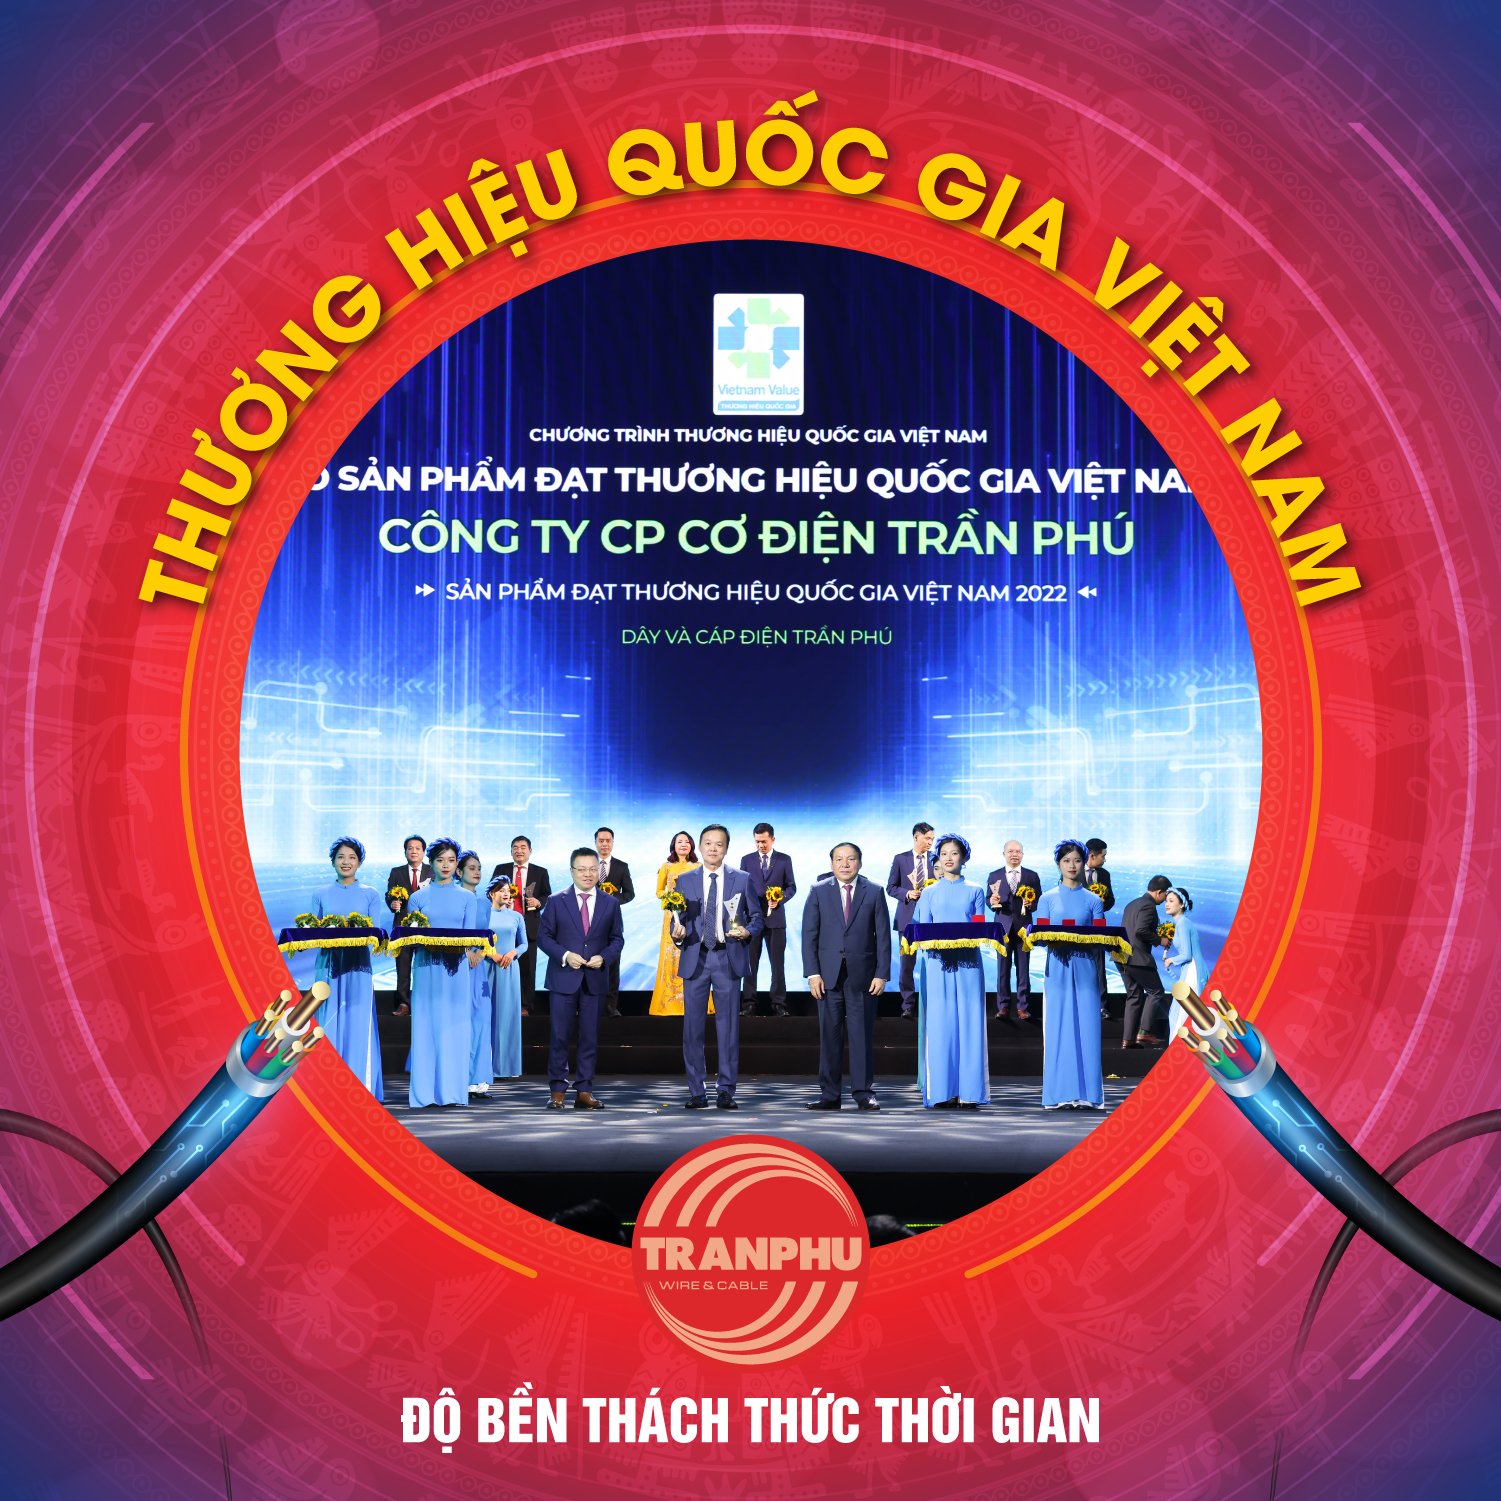 Dây cáp điện Trần Phú – Độ bền thách thức thời gian